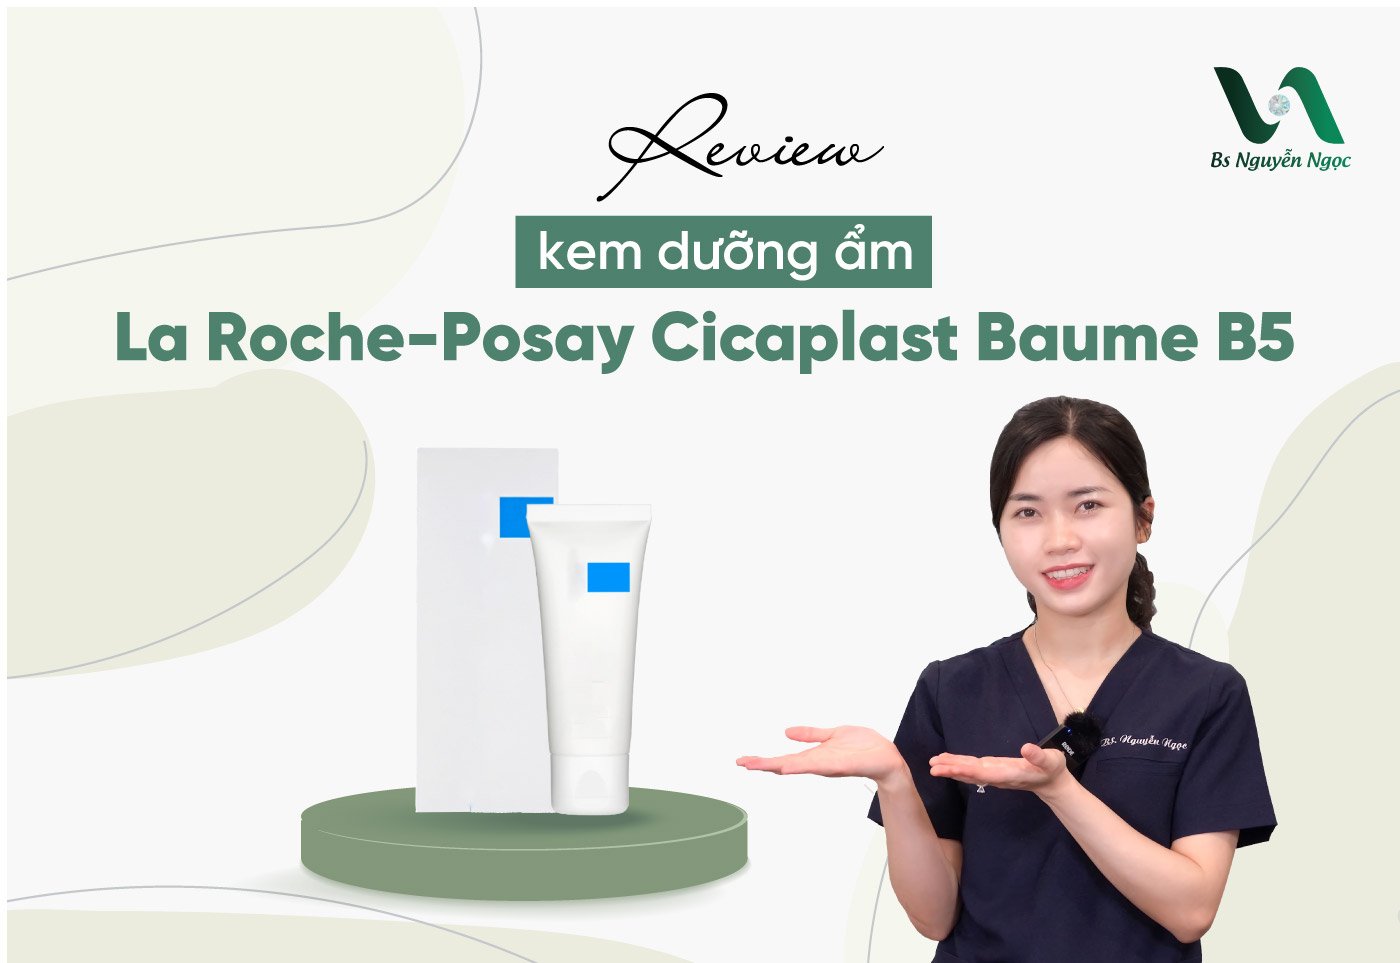 Review kem dưỡng ẩm La Roche-Posay Cicaplast Baume B5